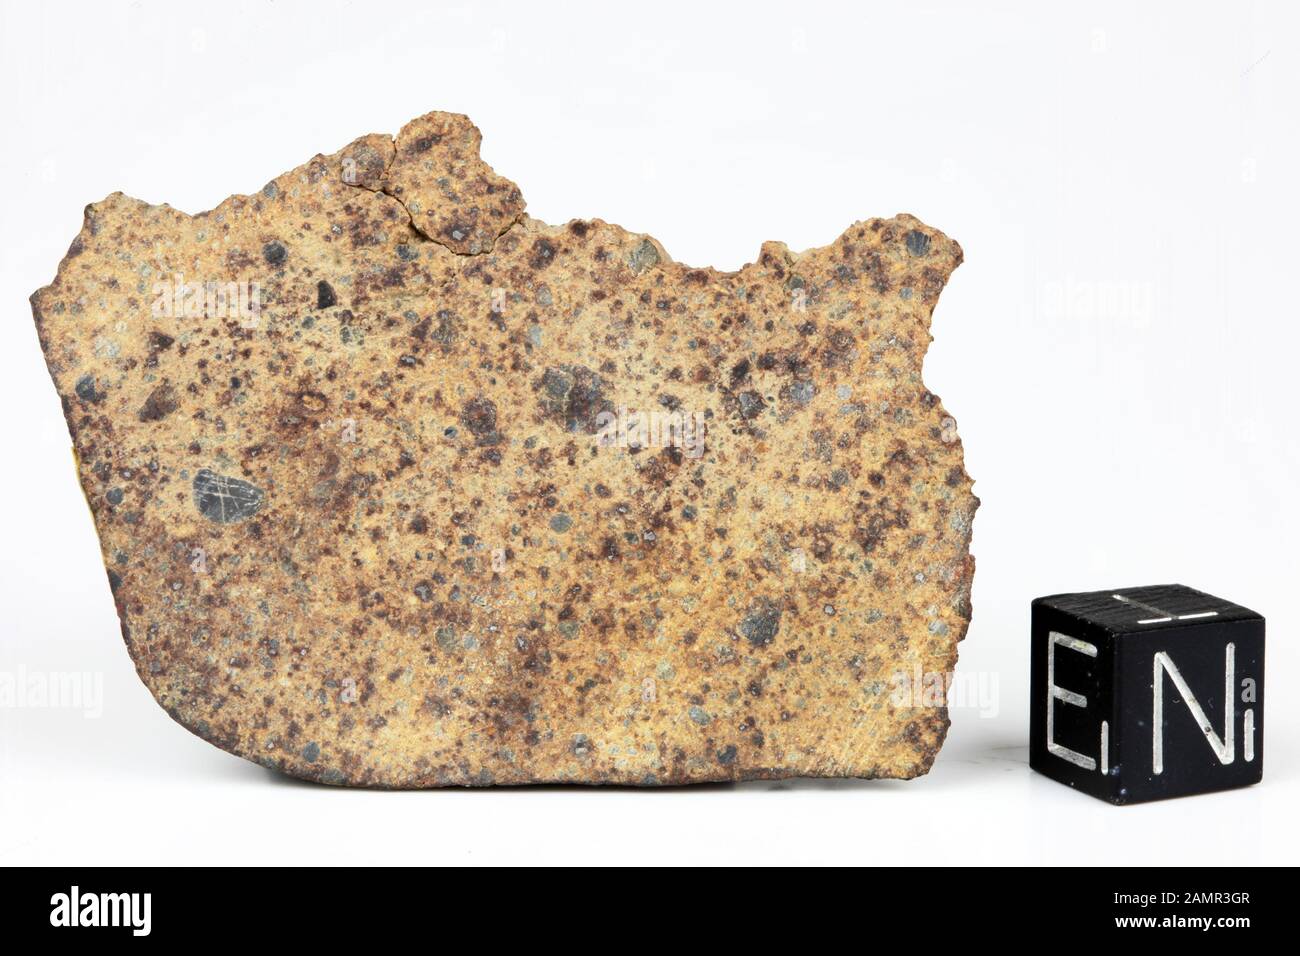 DAR AL GANI 613 - Found 1998, Dar Al Gani, Libia. Chondrite LL4. Total mass 566 grammi. Stock Photo